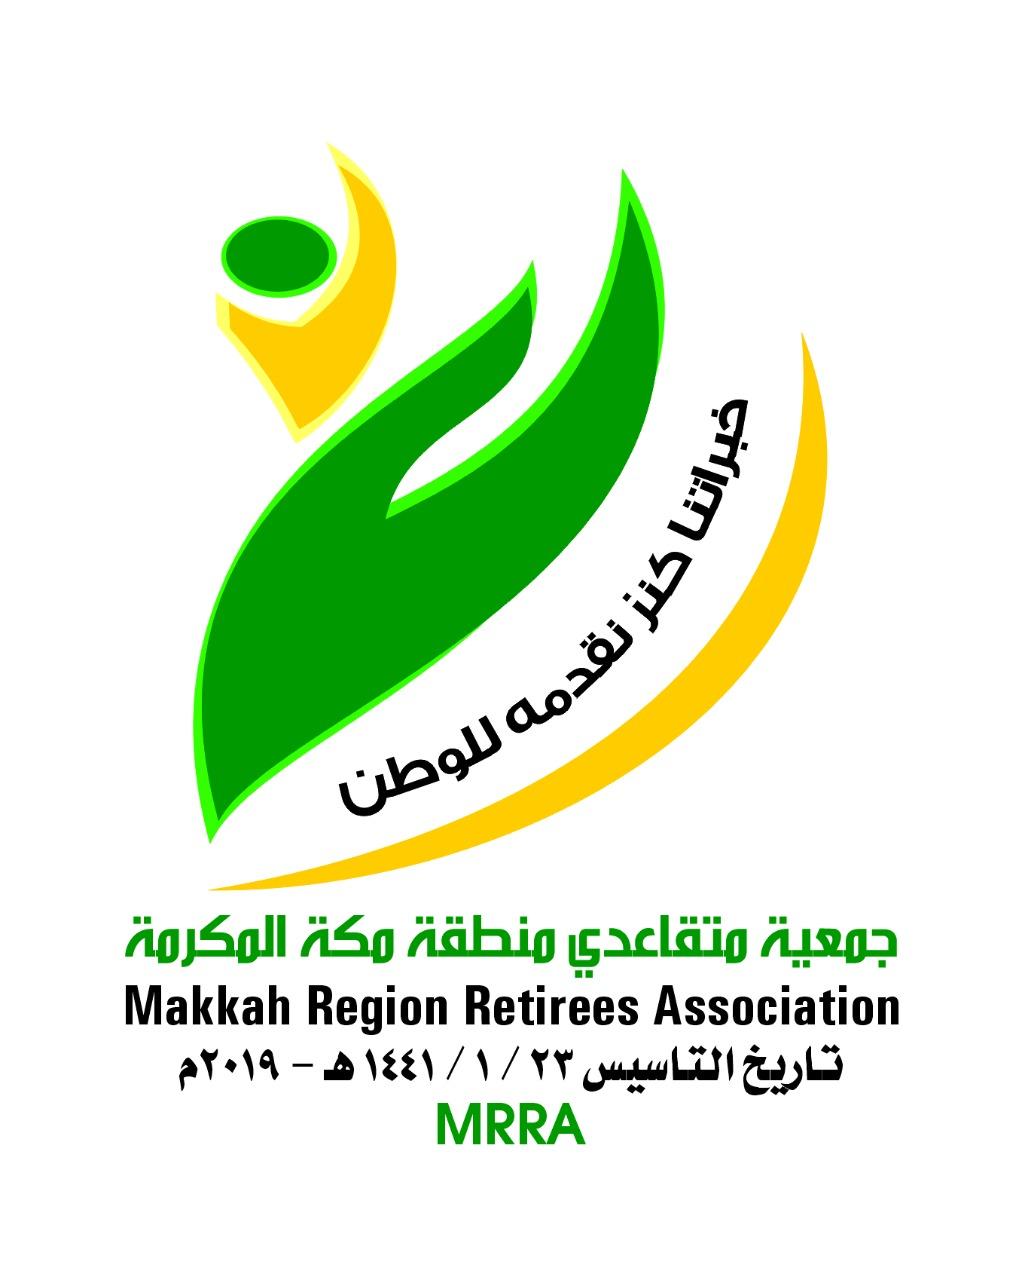 اجتماع تعارفي لجمعية متقاعدي منطقة مكة المكرمة مع المؤسسين